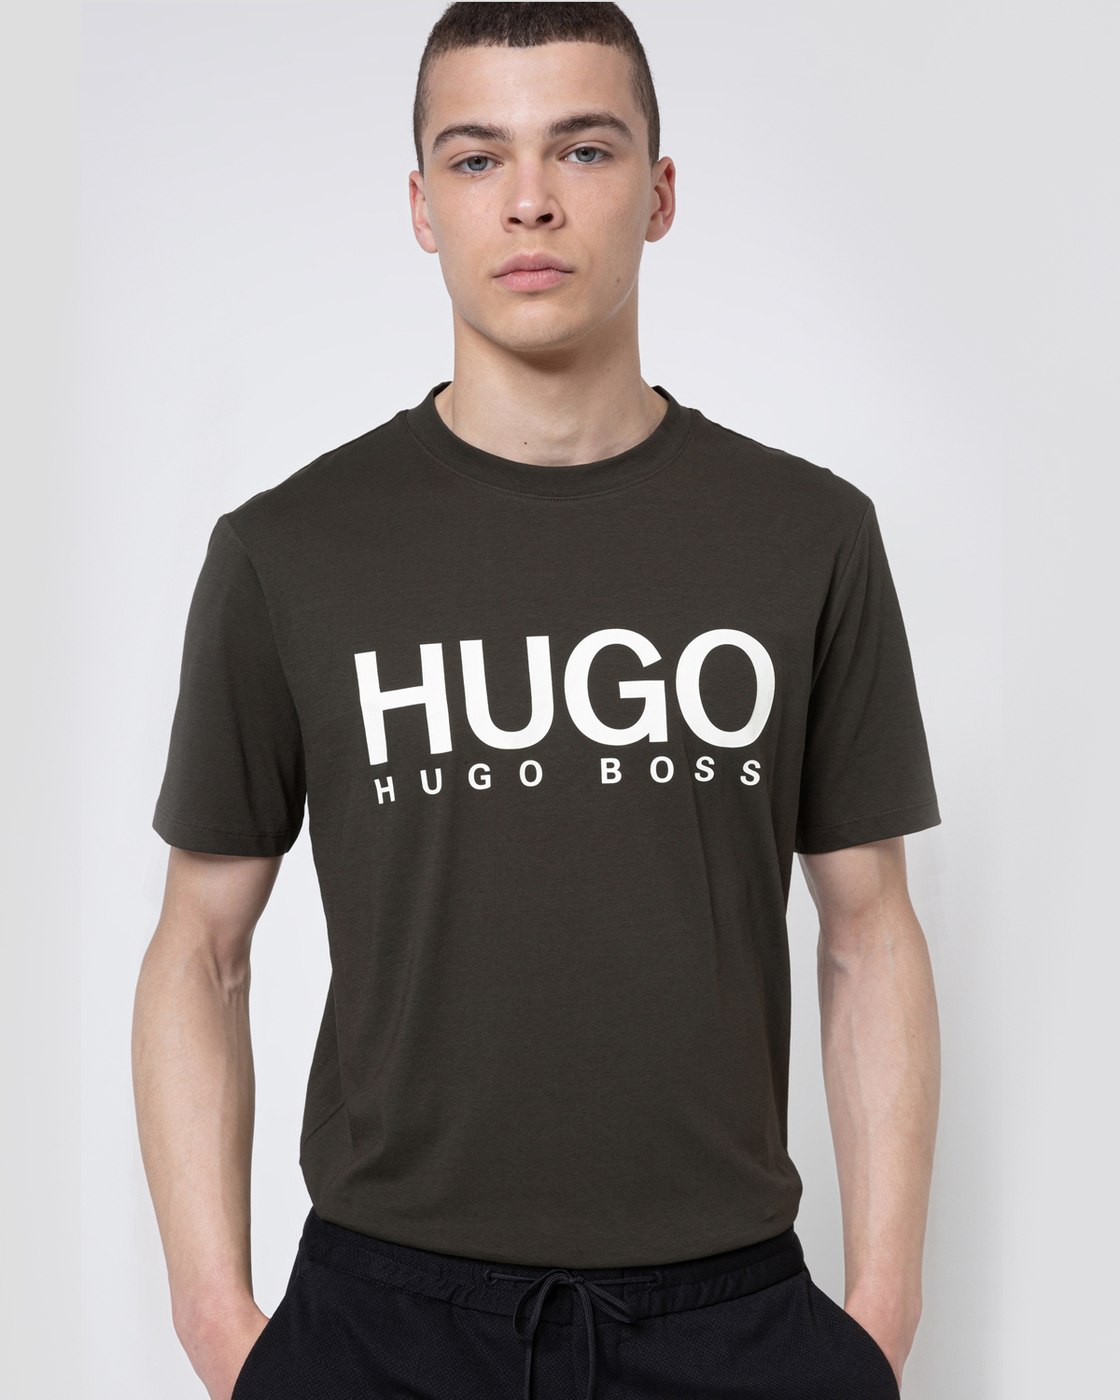 Футболки хуго босс. Футболка Хуго босс Green. Футболка Hugo Hugo Boss. Футболка Hugo Boss Ukraine. Boss Hugo Boss t-Shirt.